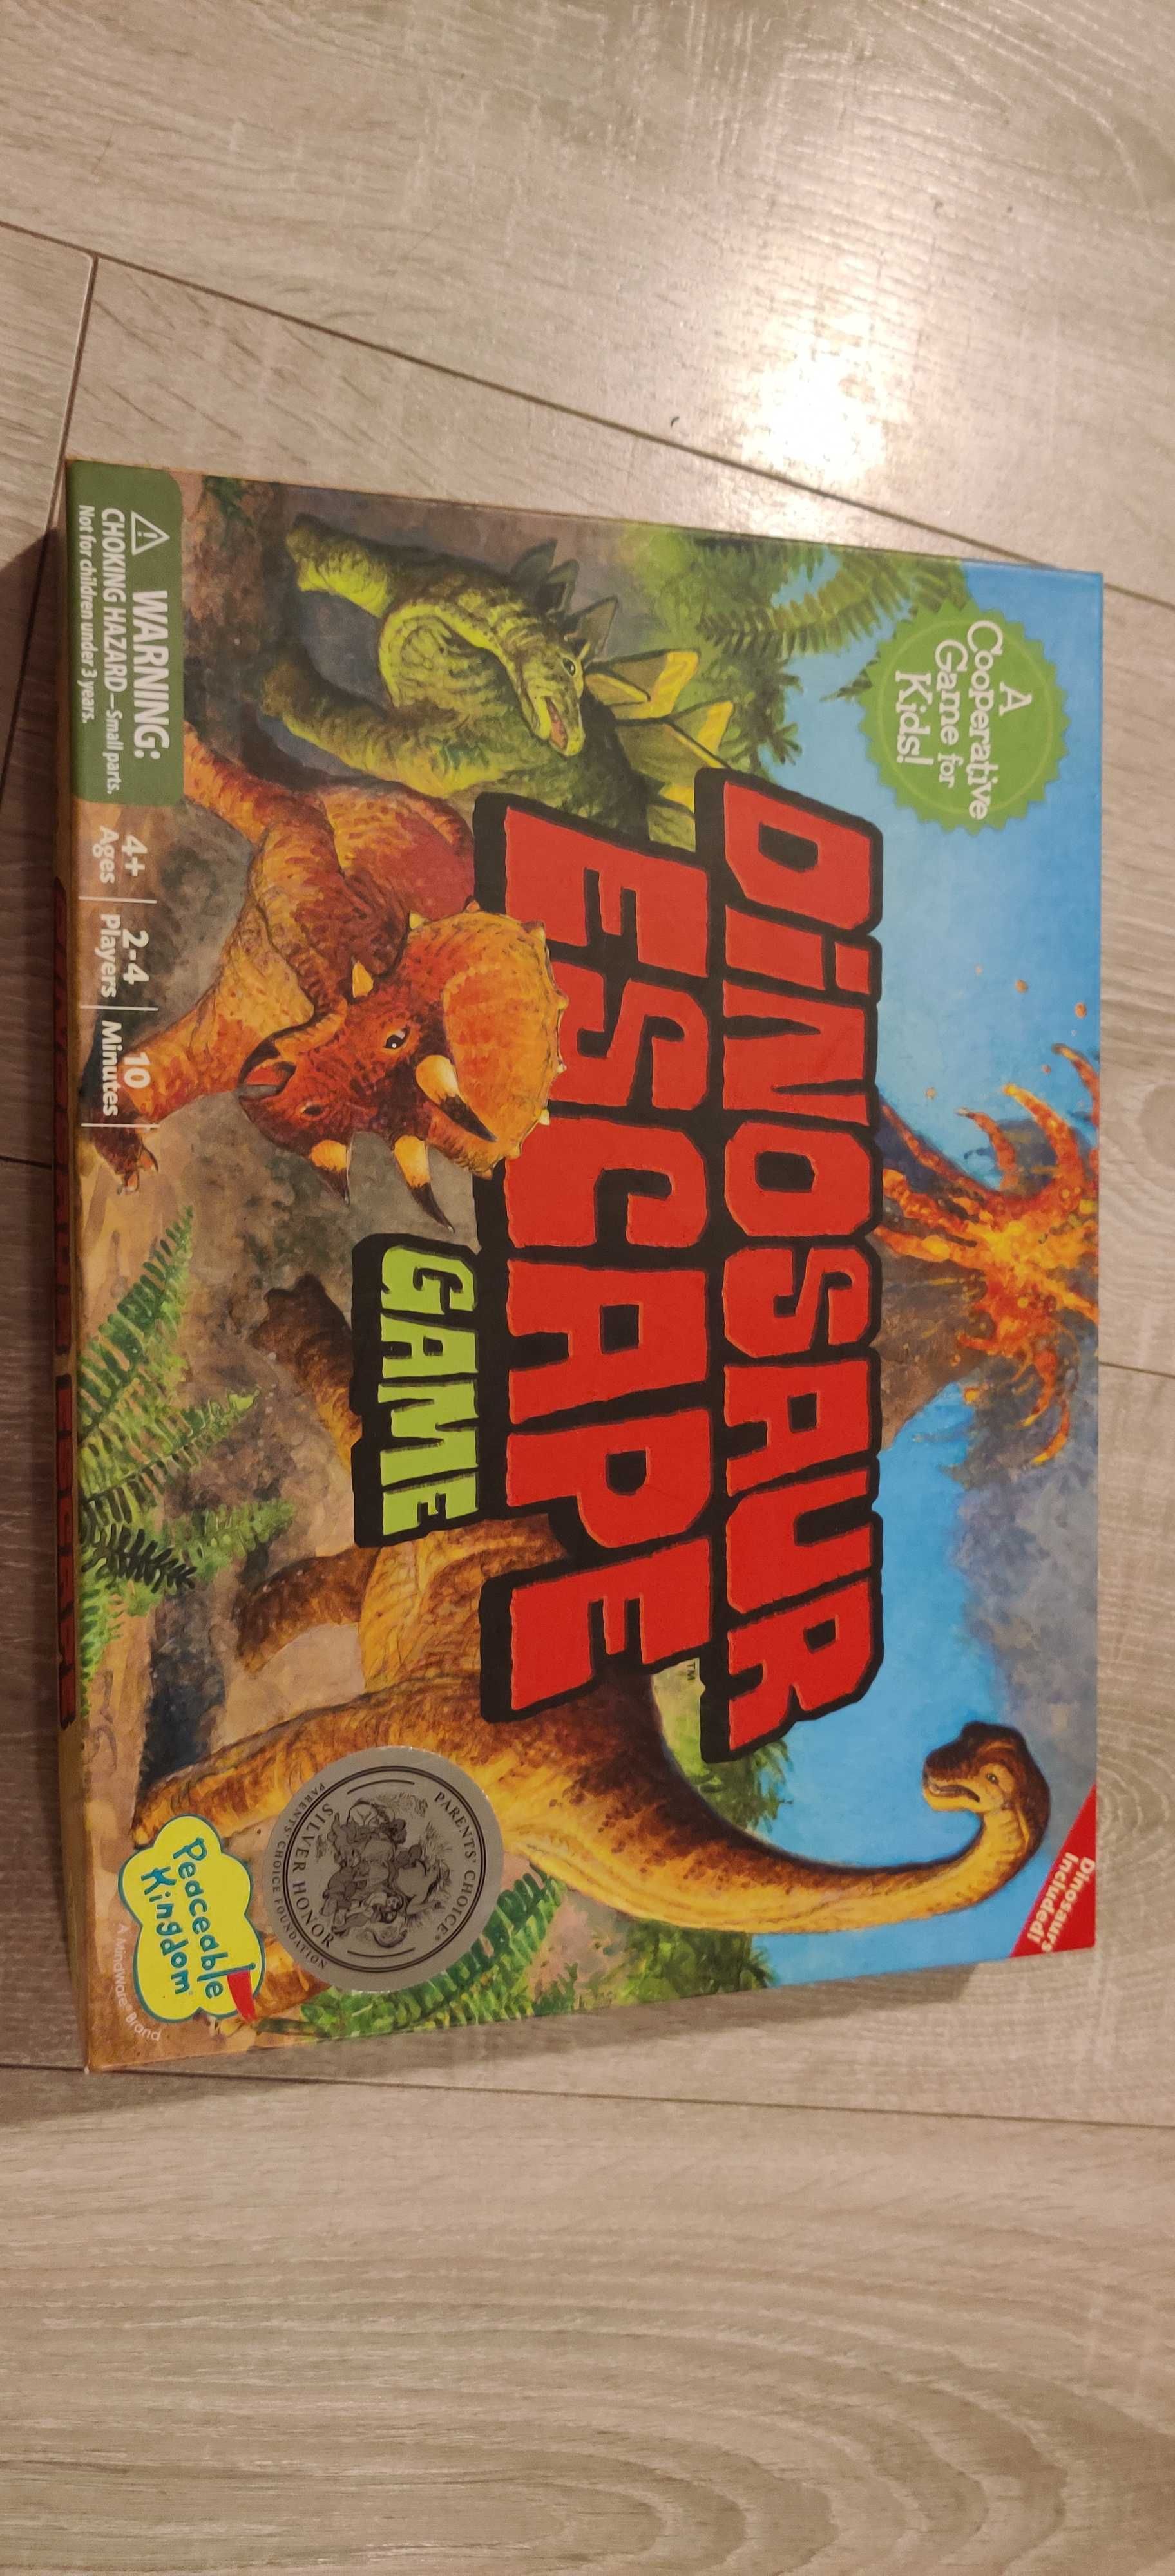 Joc, board game,dinosaur escape,